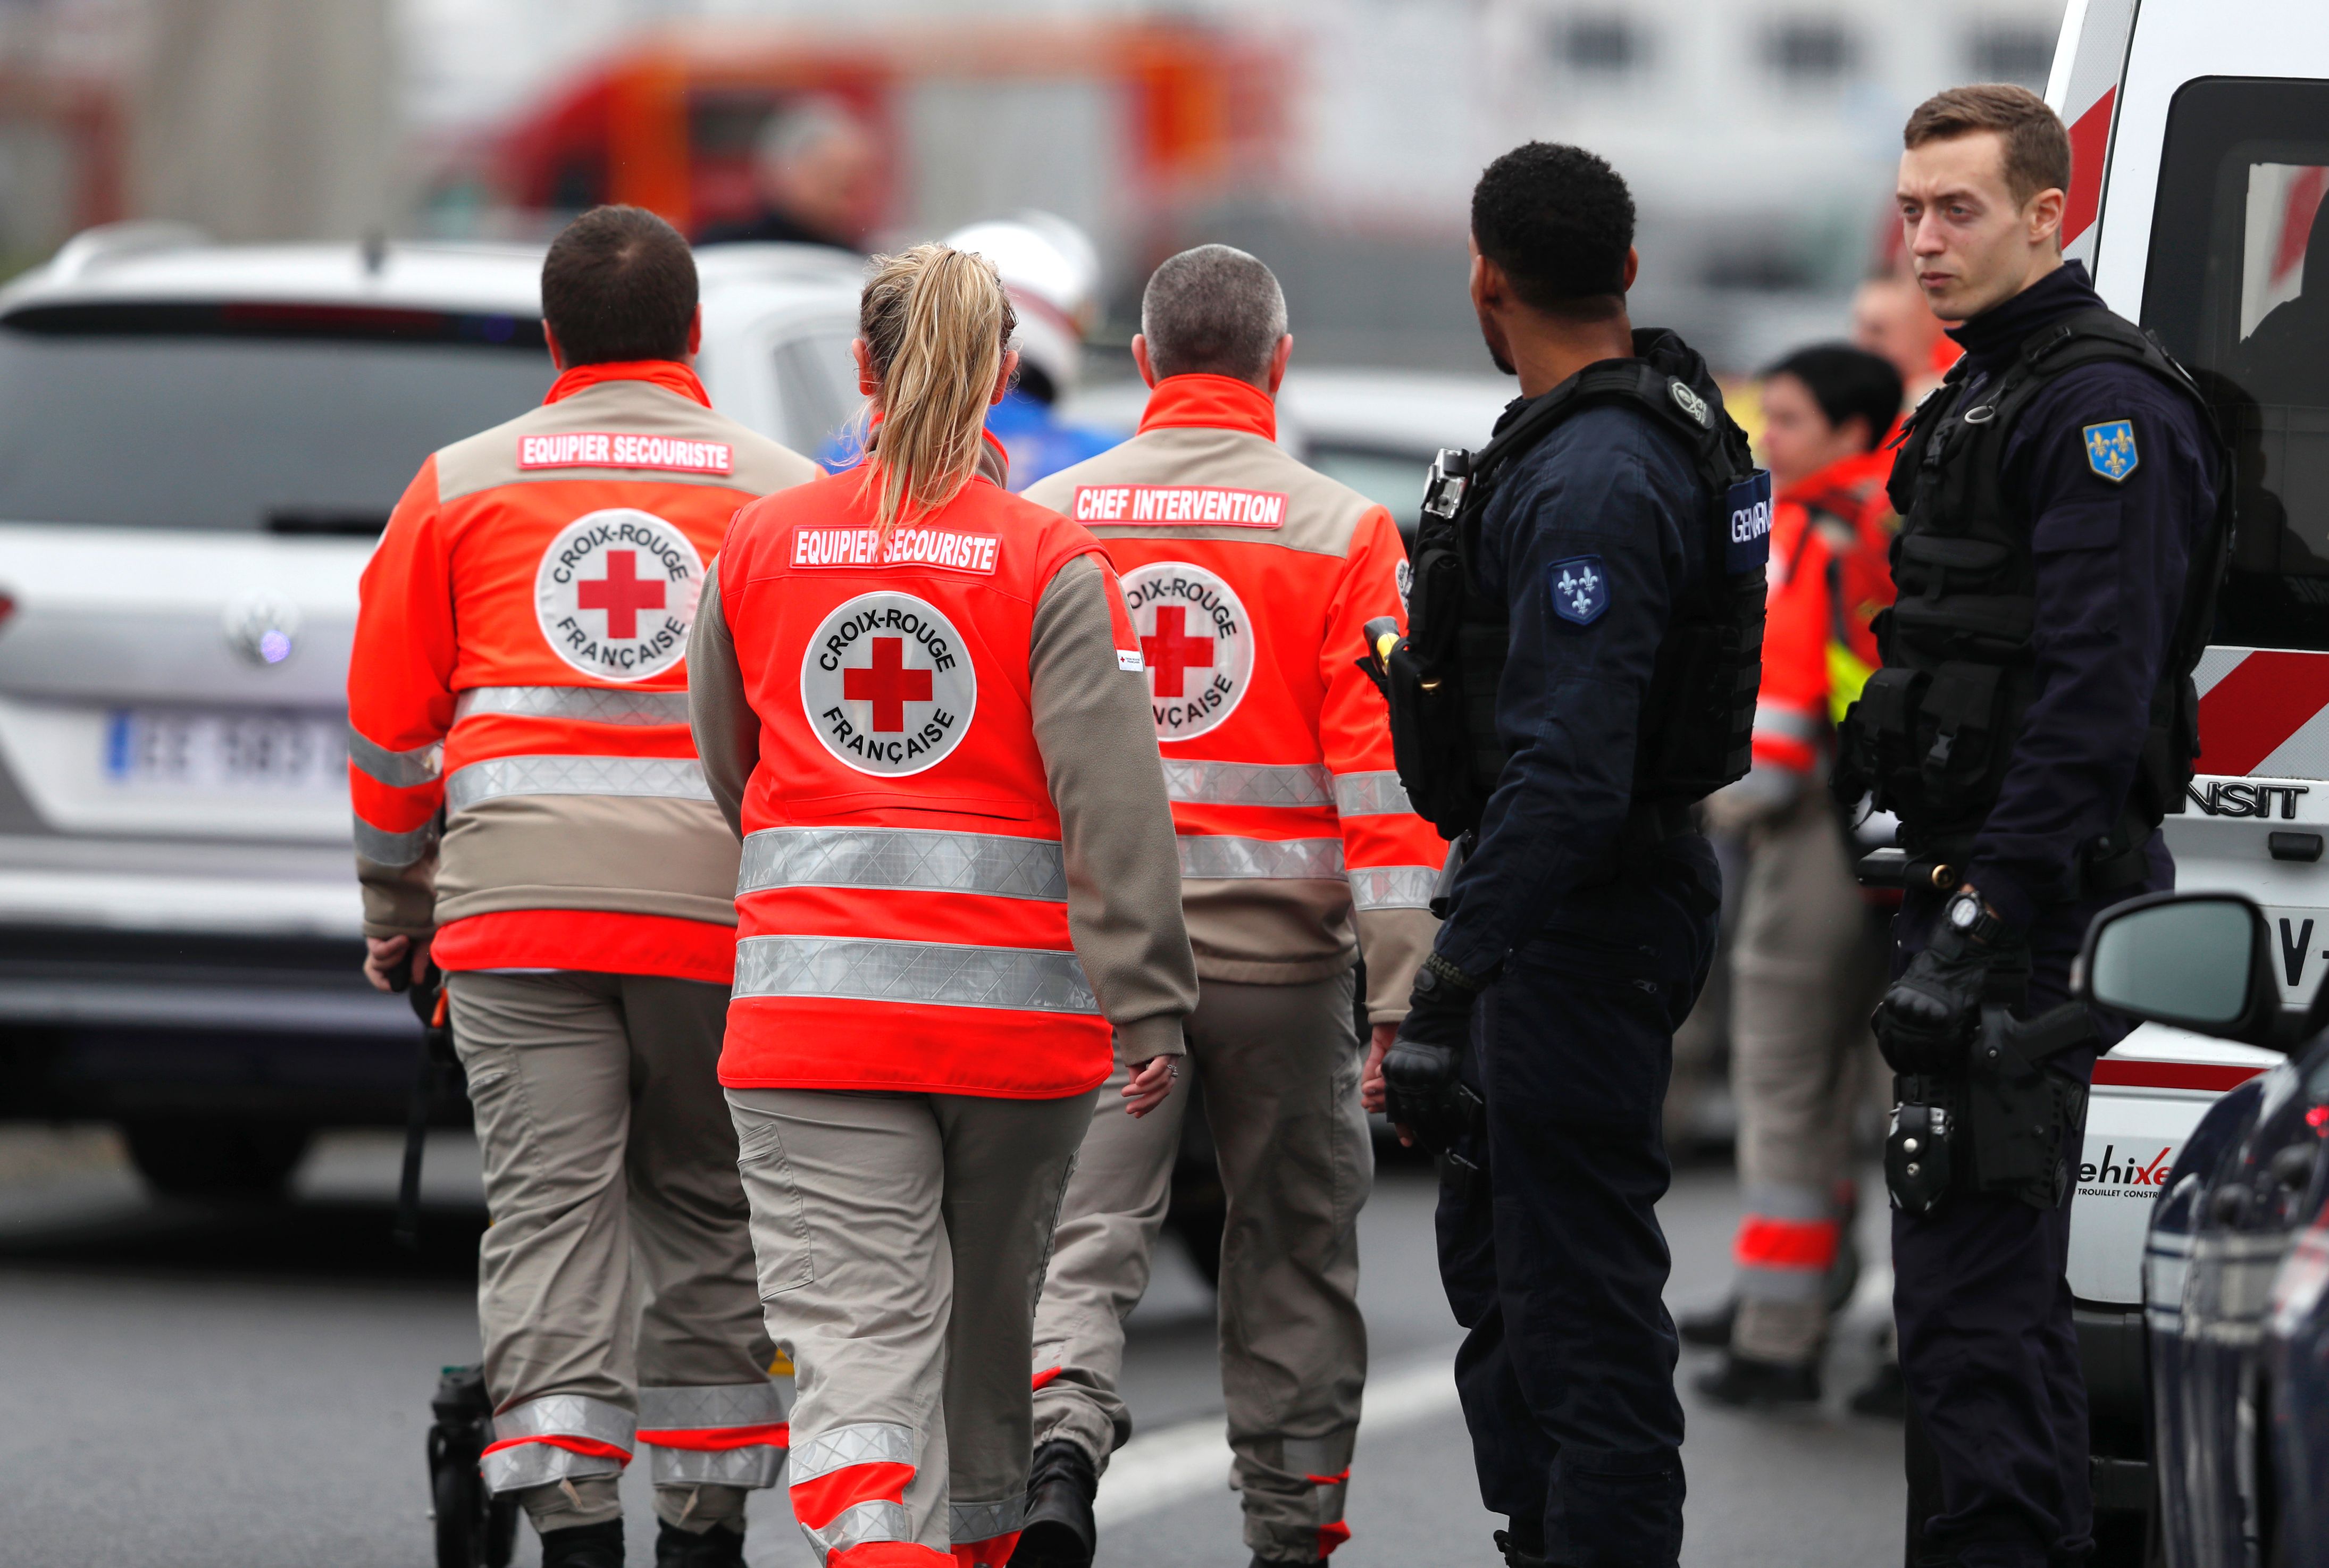 Pariser Flughafen-Attentäter hatte Drogen und Alkohol im Blut